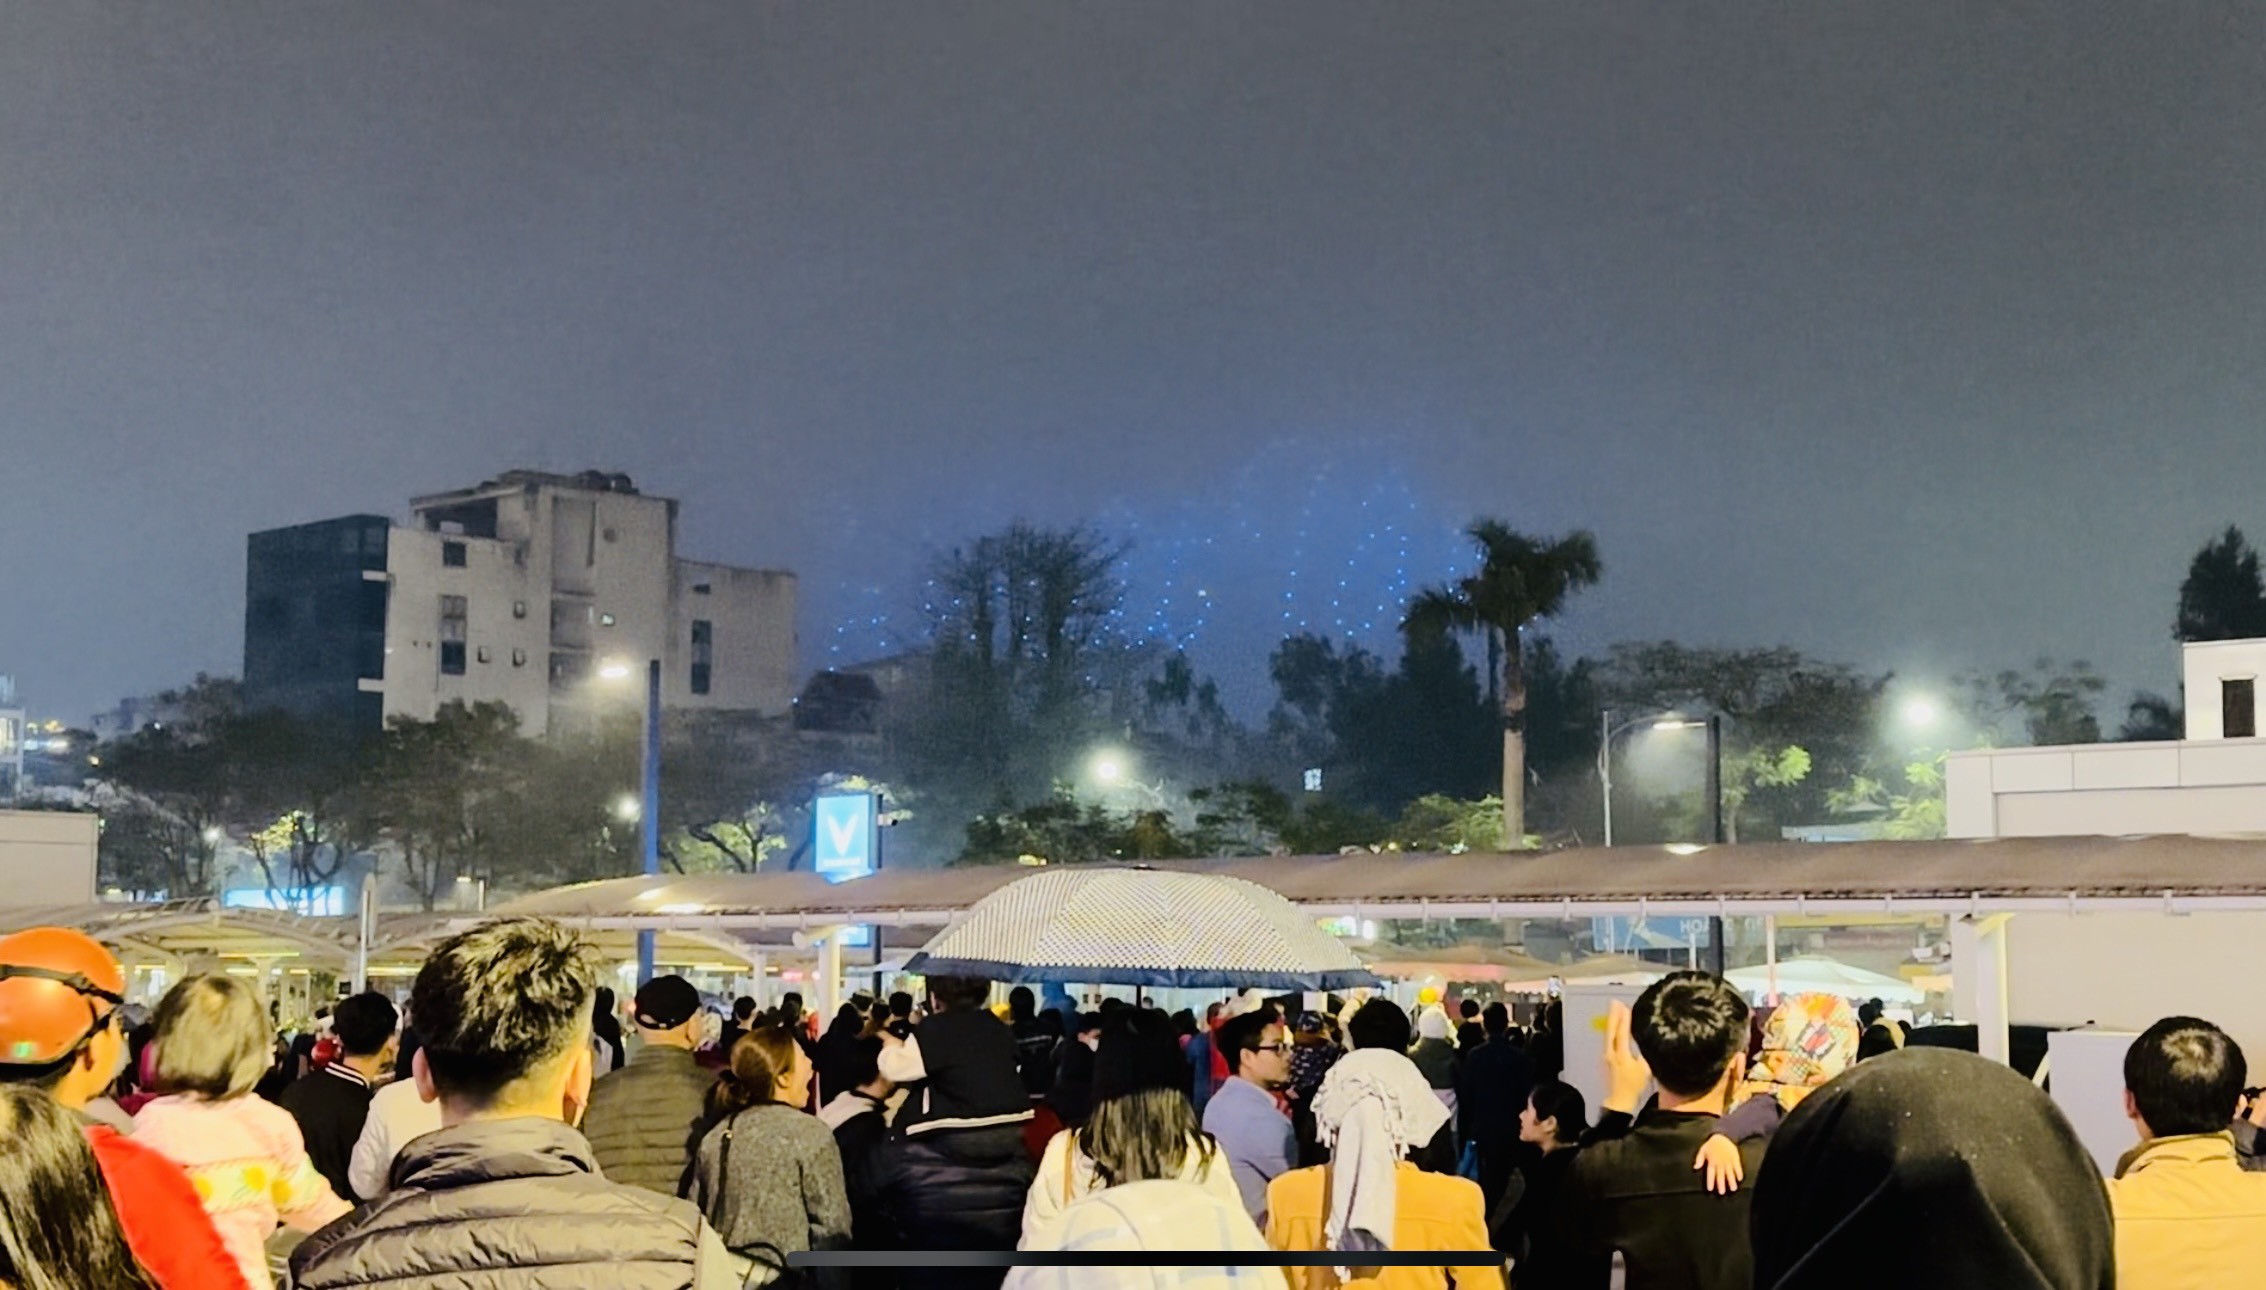 Tối 9/3, tại phố Trịnh Công Sơn (tuyến phố sát Hồ Tây, quận Tây Hồ) đã diễn ra màn trình diễn ánh sáng với hàng trăm chiếc drone. Màn trình diễn ánh sáng nằm trong khuôn khổ chương trình 